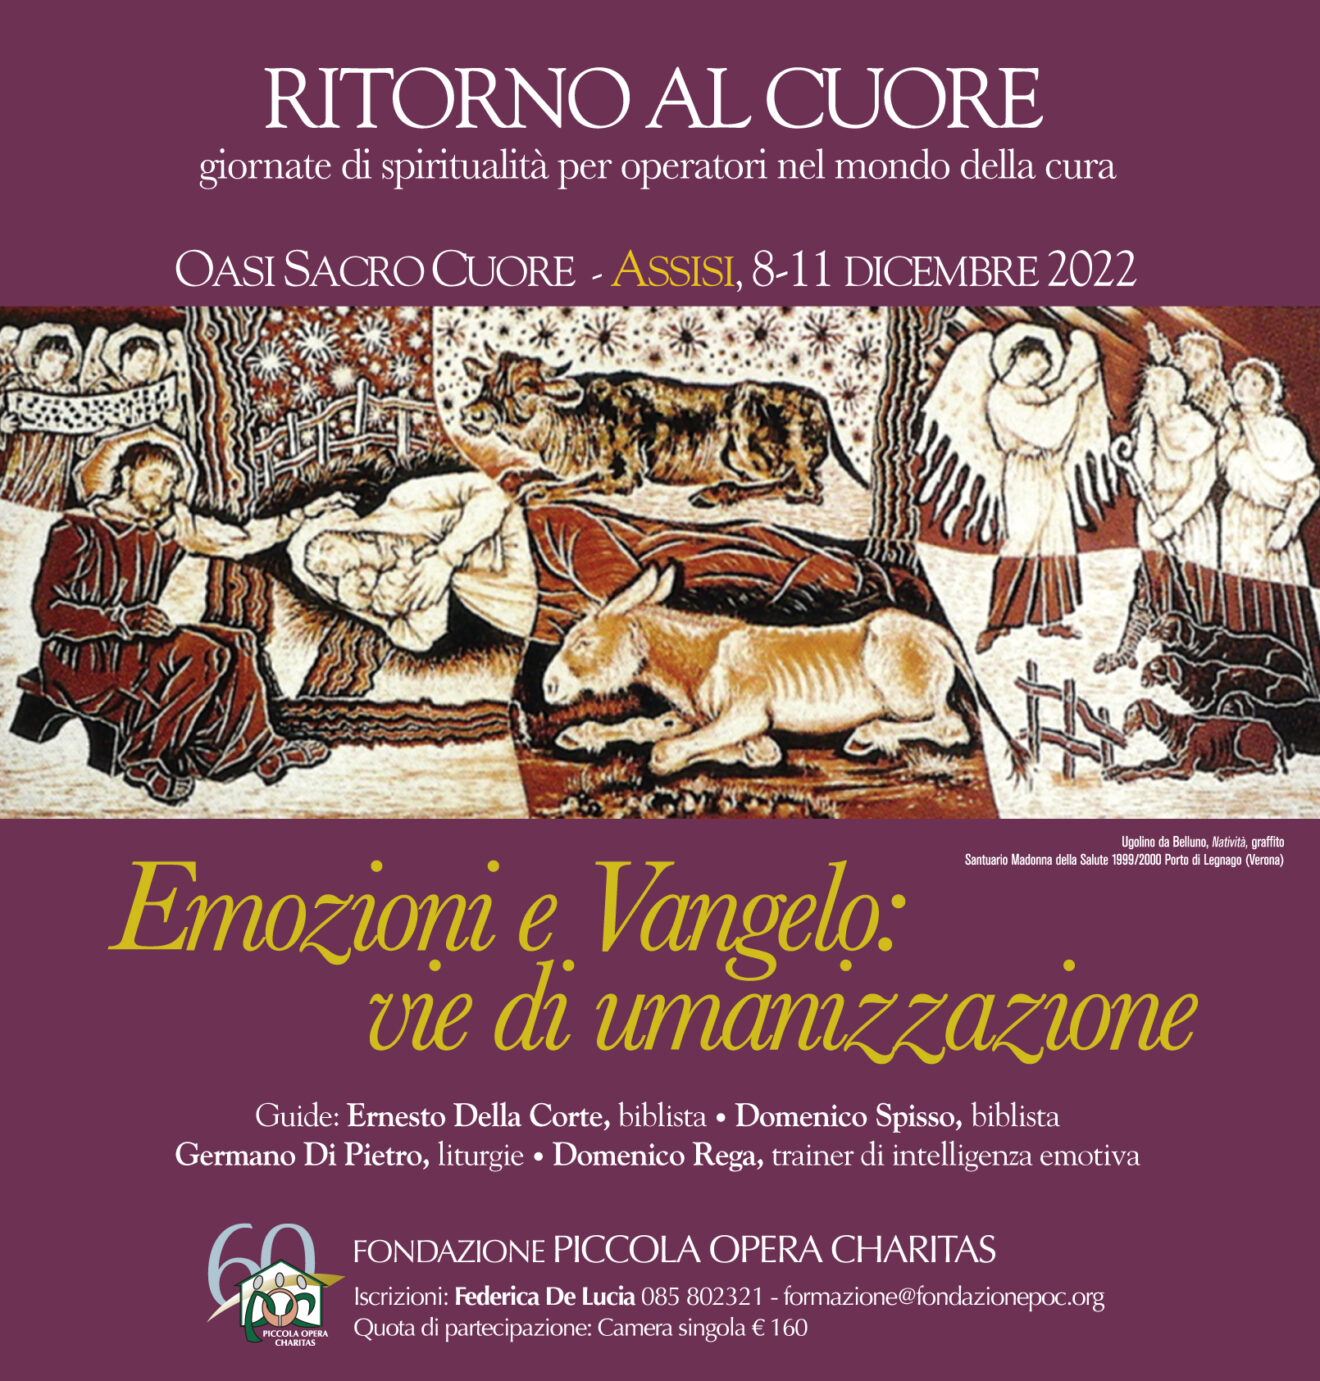 Assisi, 8-11 dicembre 2022 - Emozioni e Vangelo: vie di umanizzazione